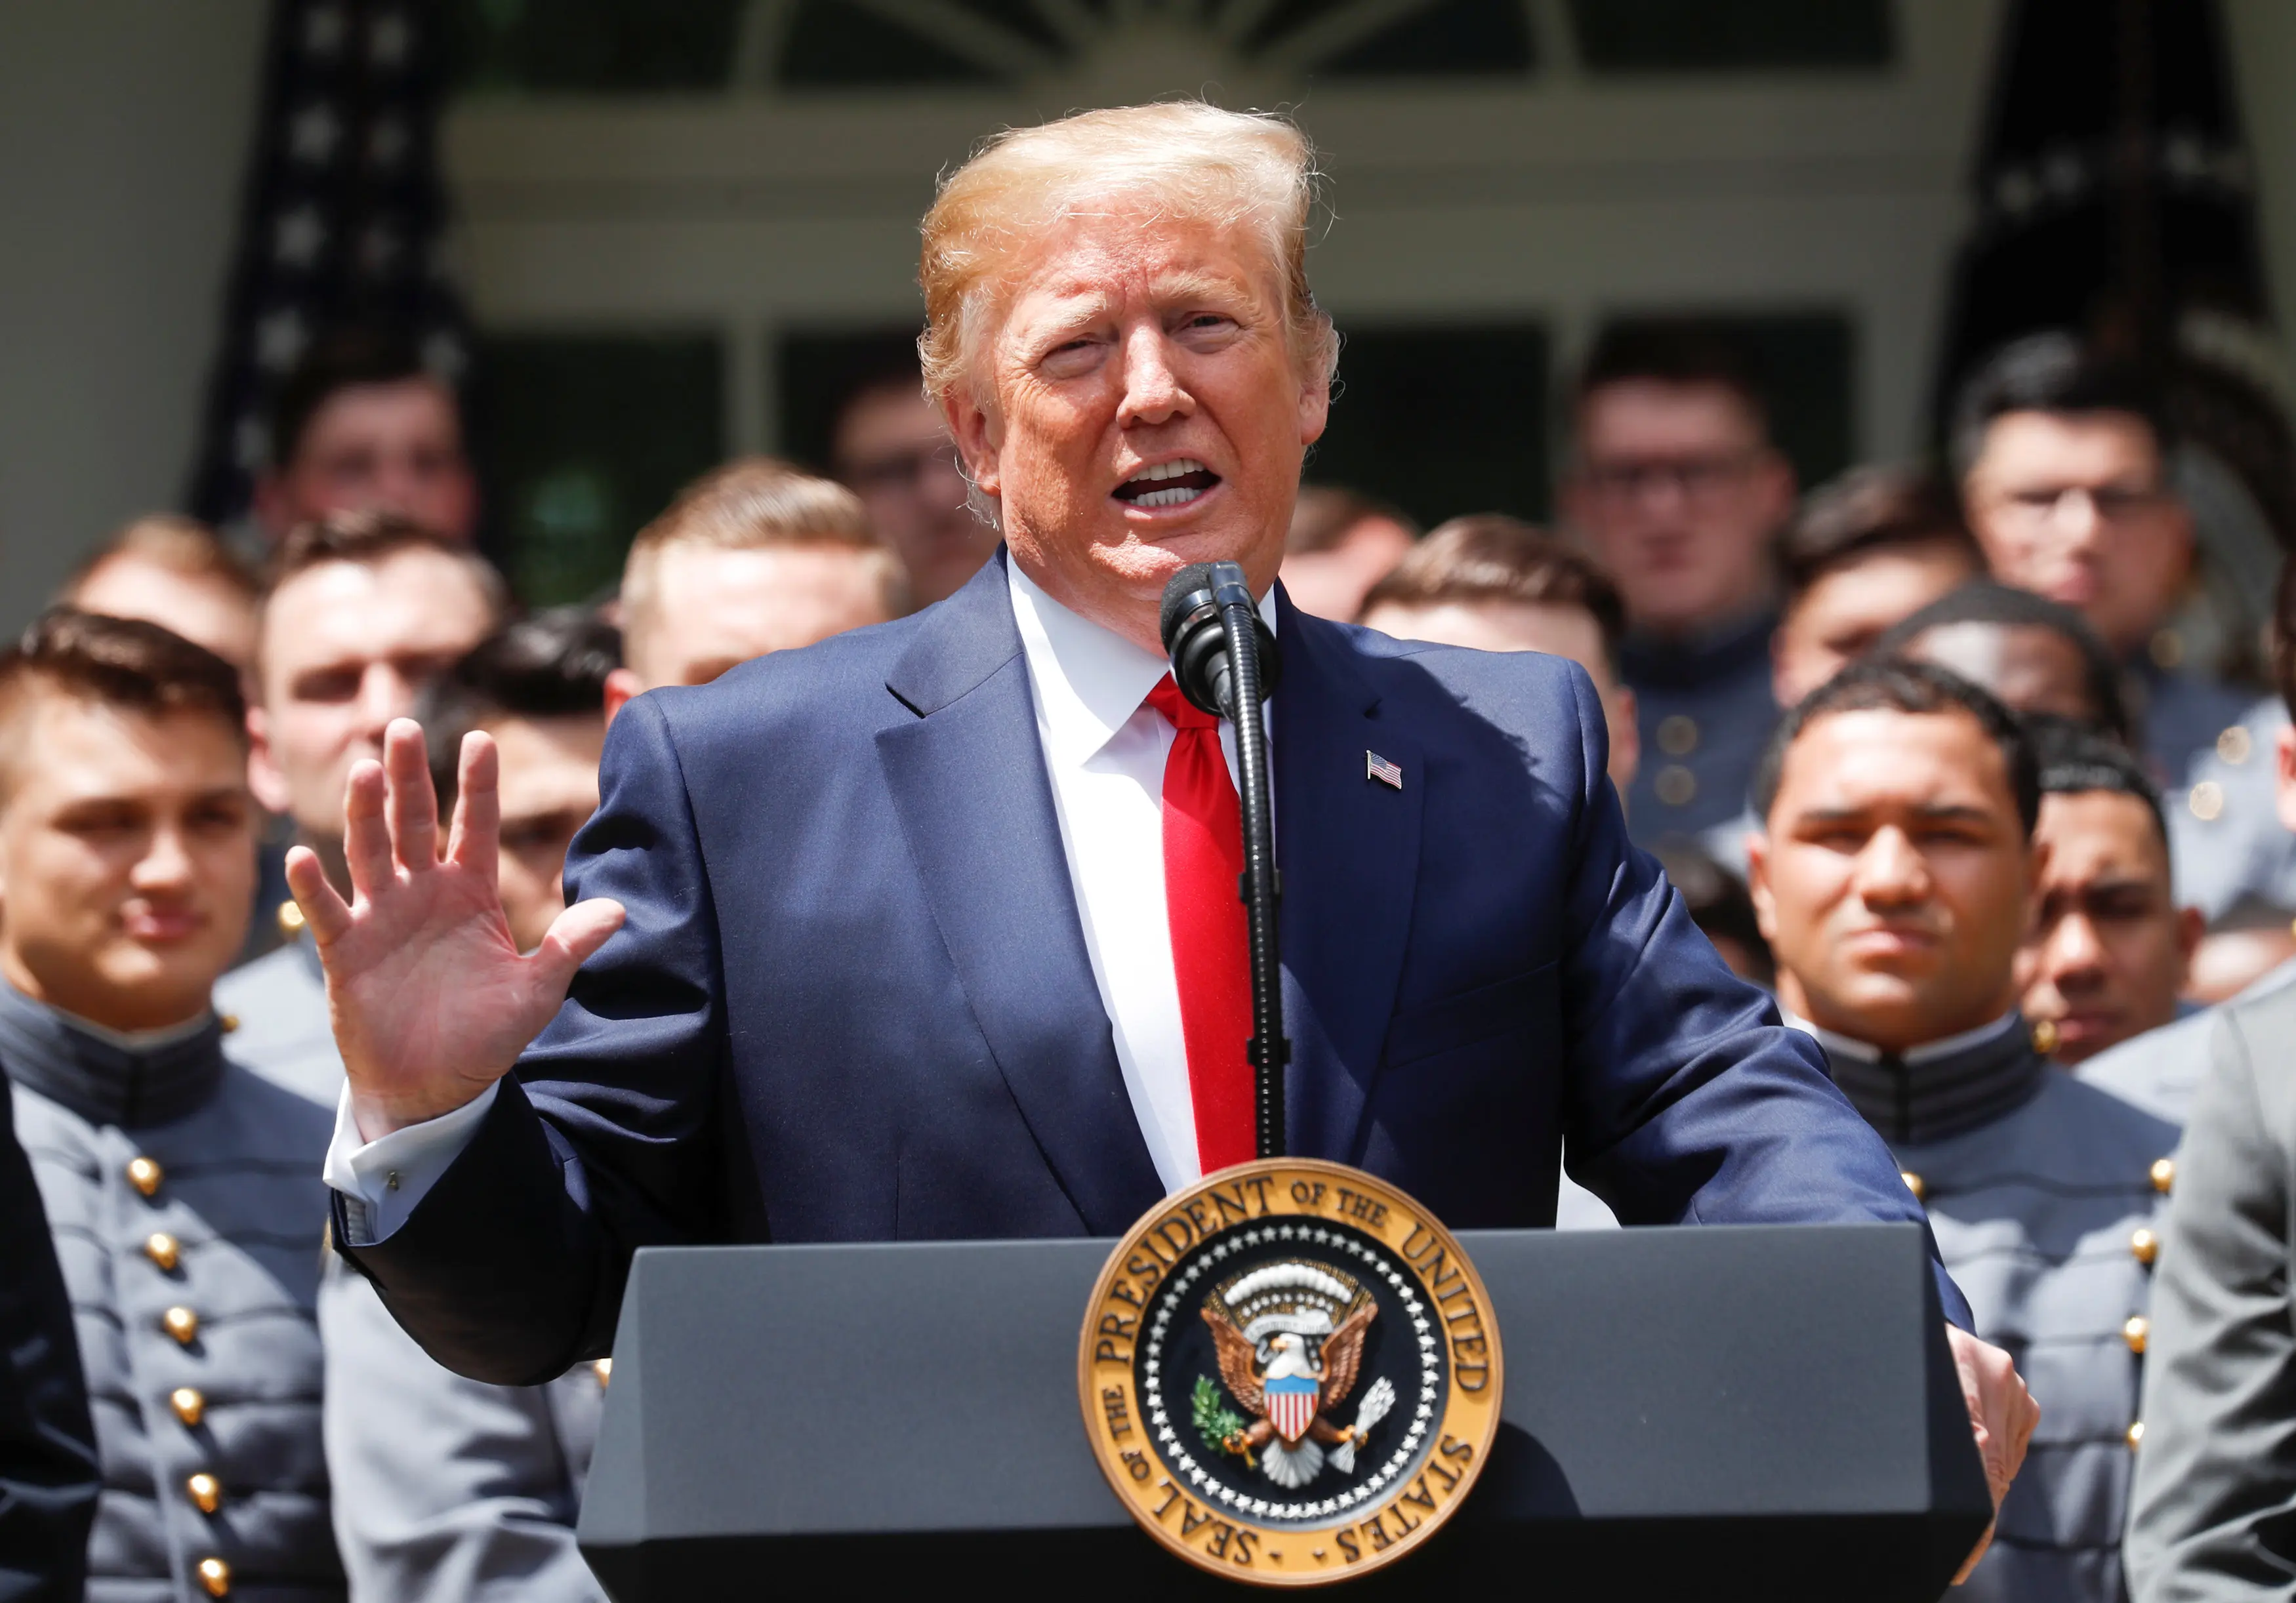 נשיא ארה"ב, דונלד טראמפ מברך את נבחרת הכדורגל הצבאית של ארה"ב בבית הלבן, וושינגטון, ארה"ב 6 במאי 2019